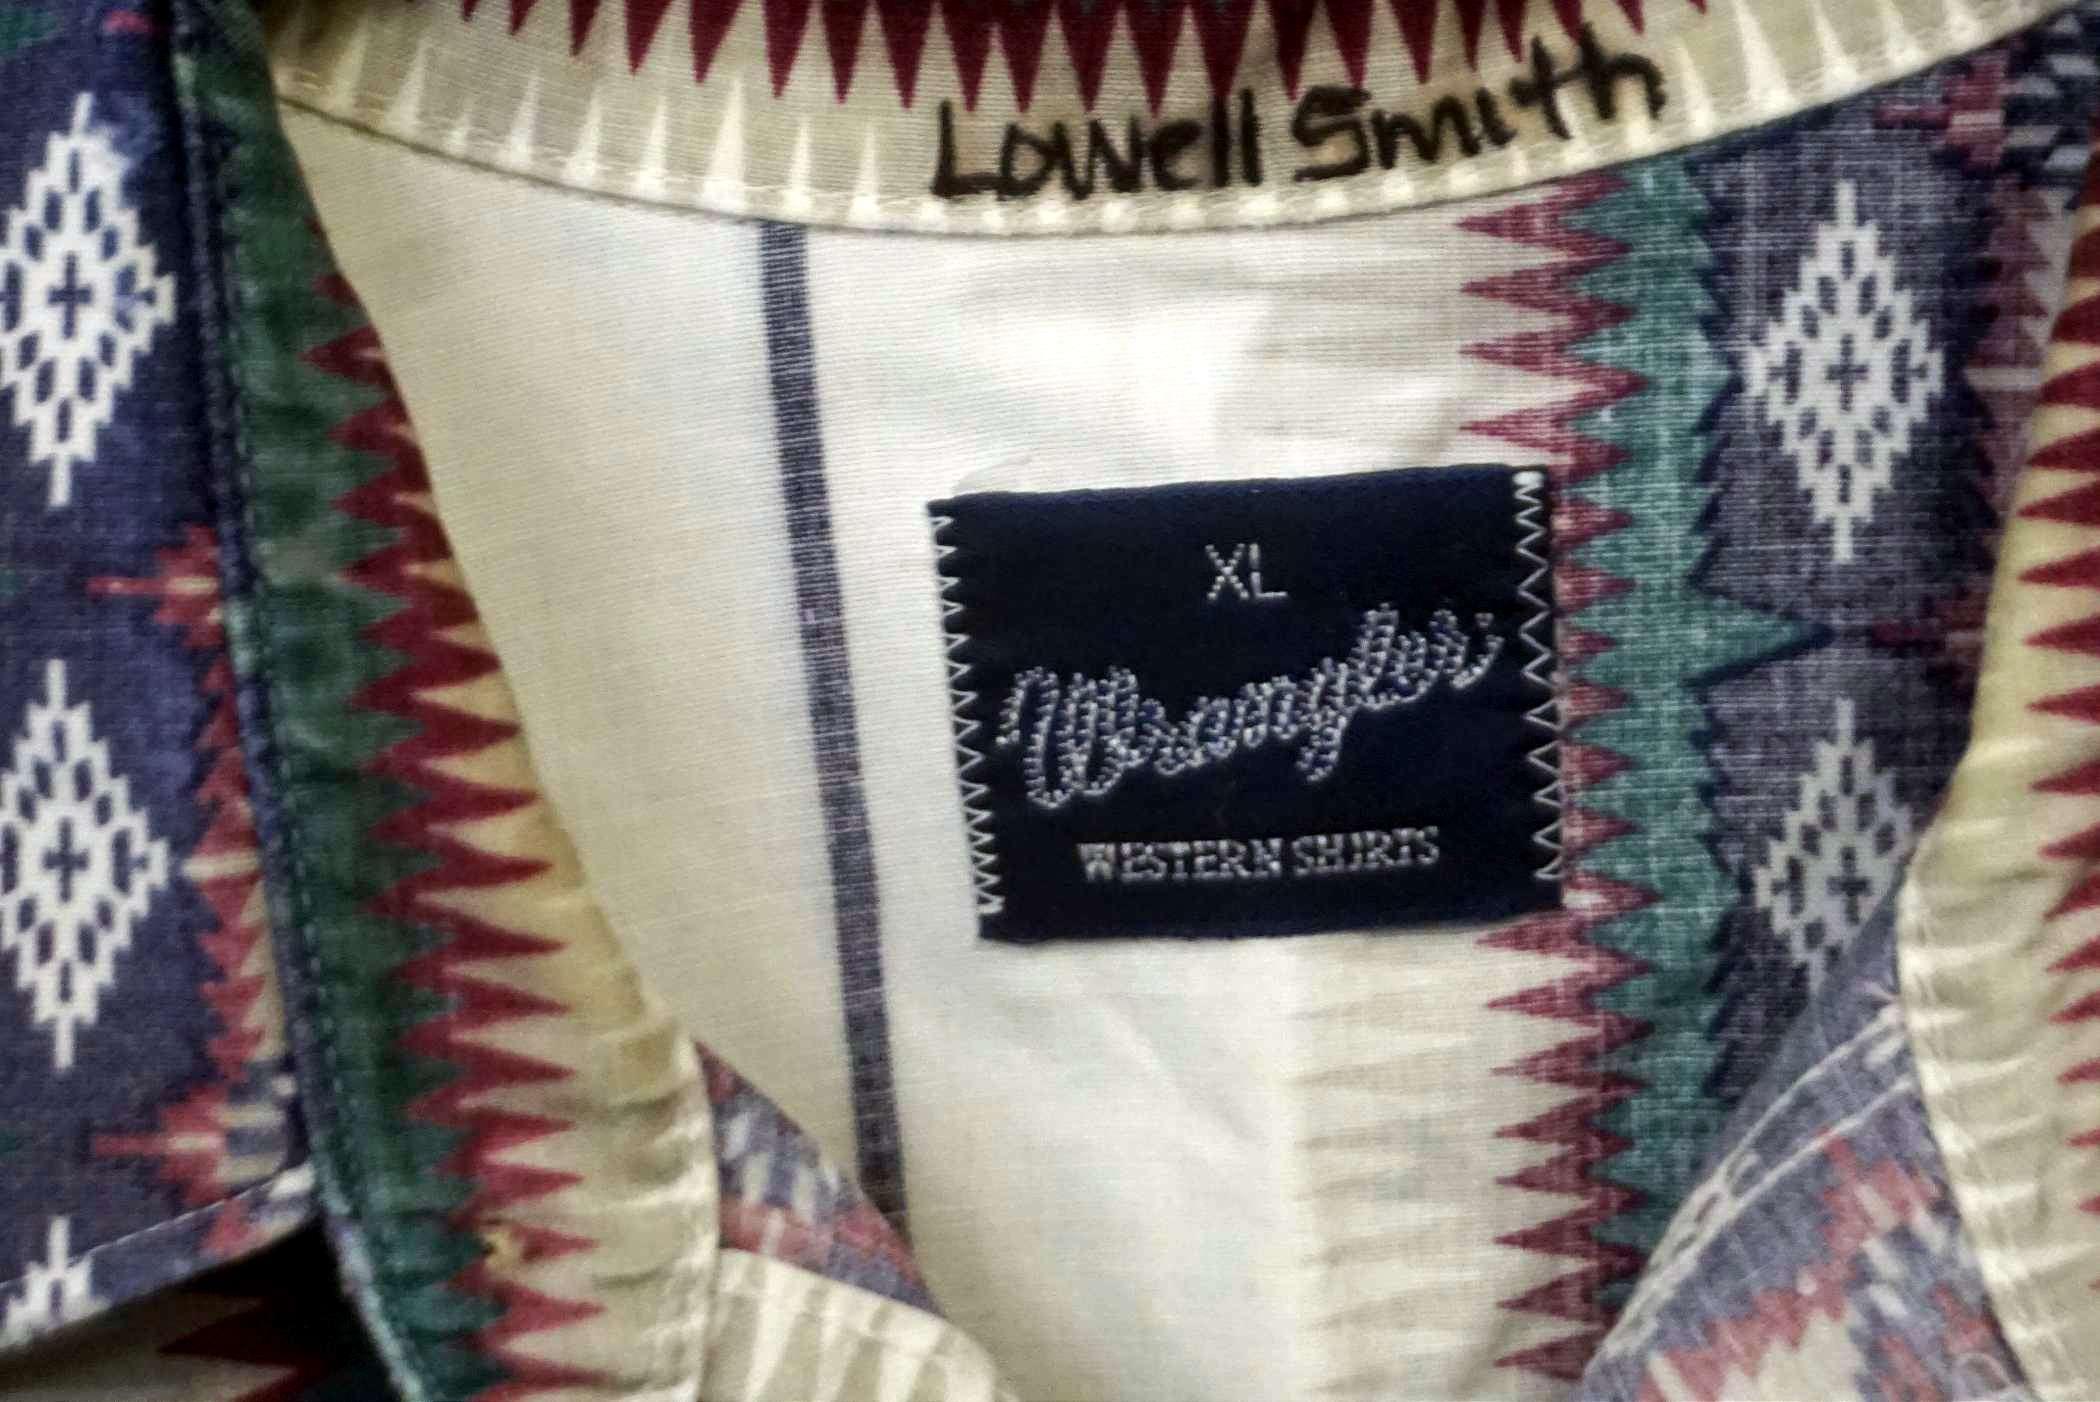 2 - Pearl Snap Wrangler Shirts (Xl)